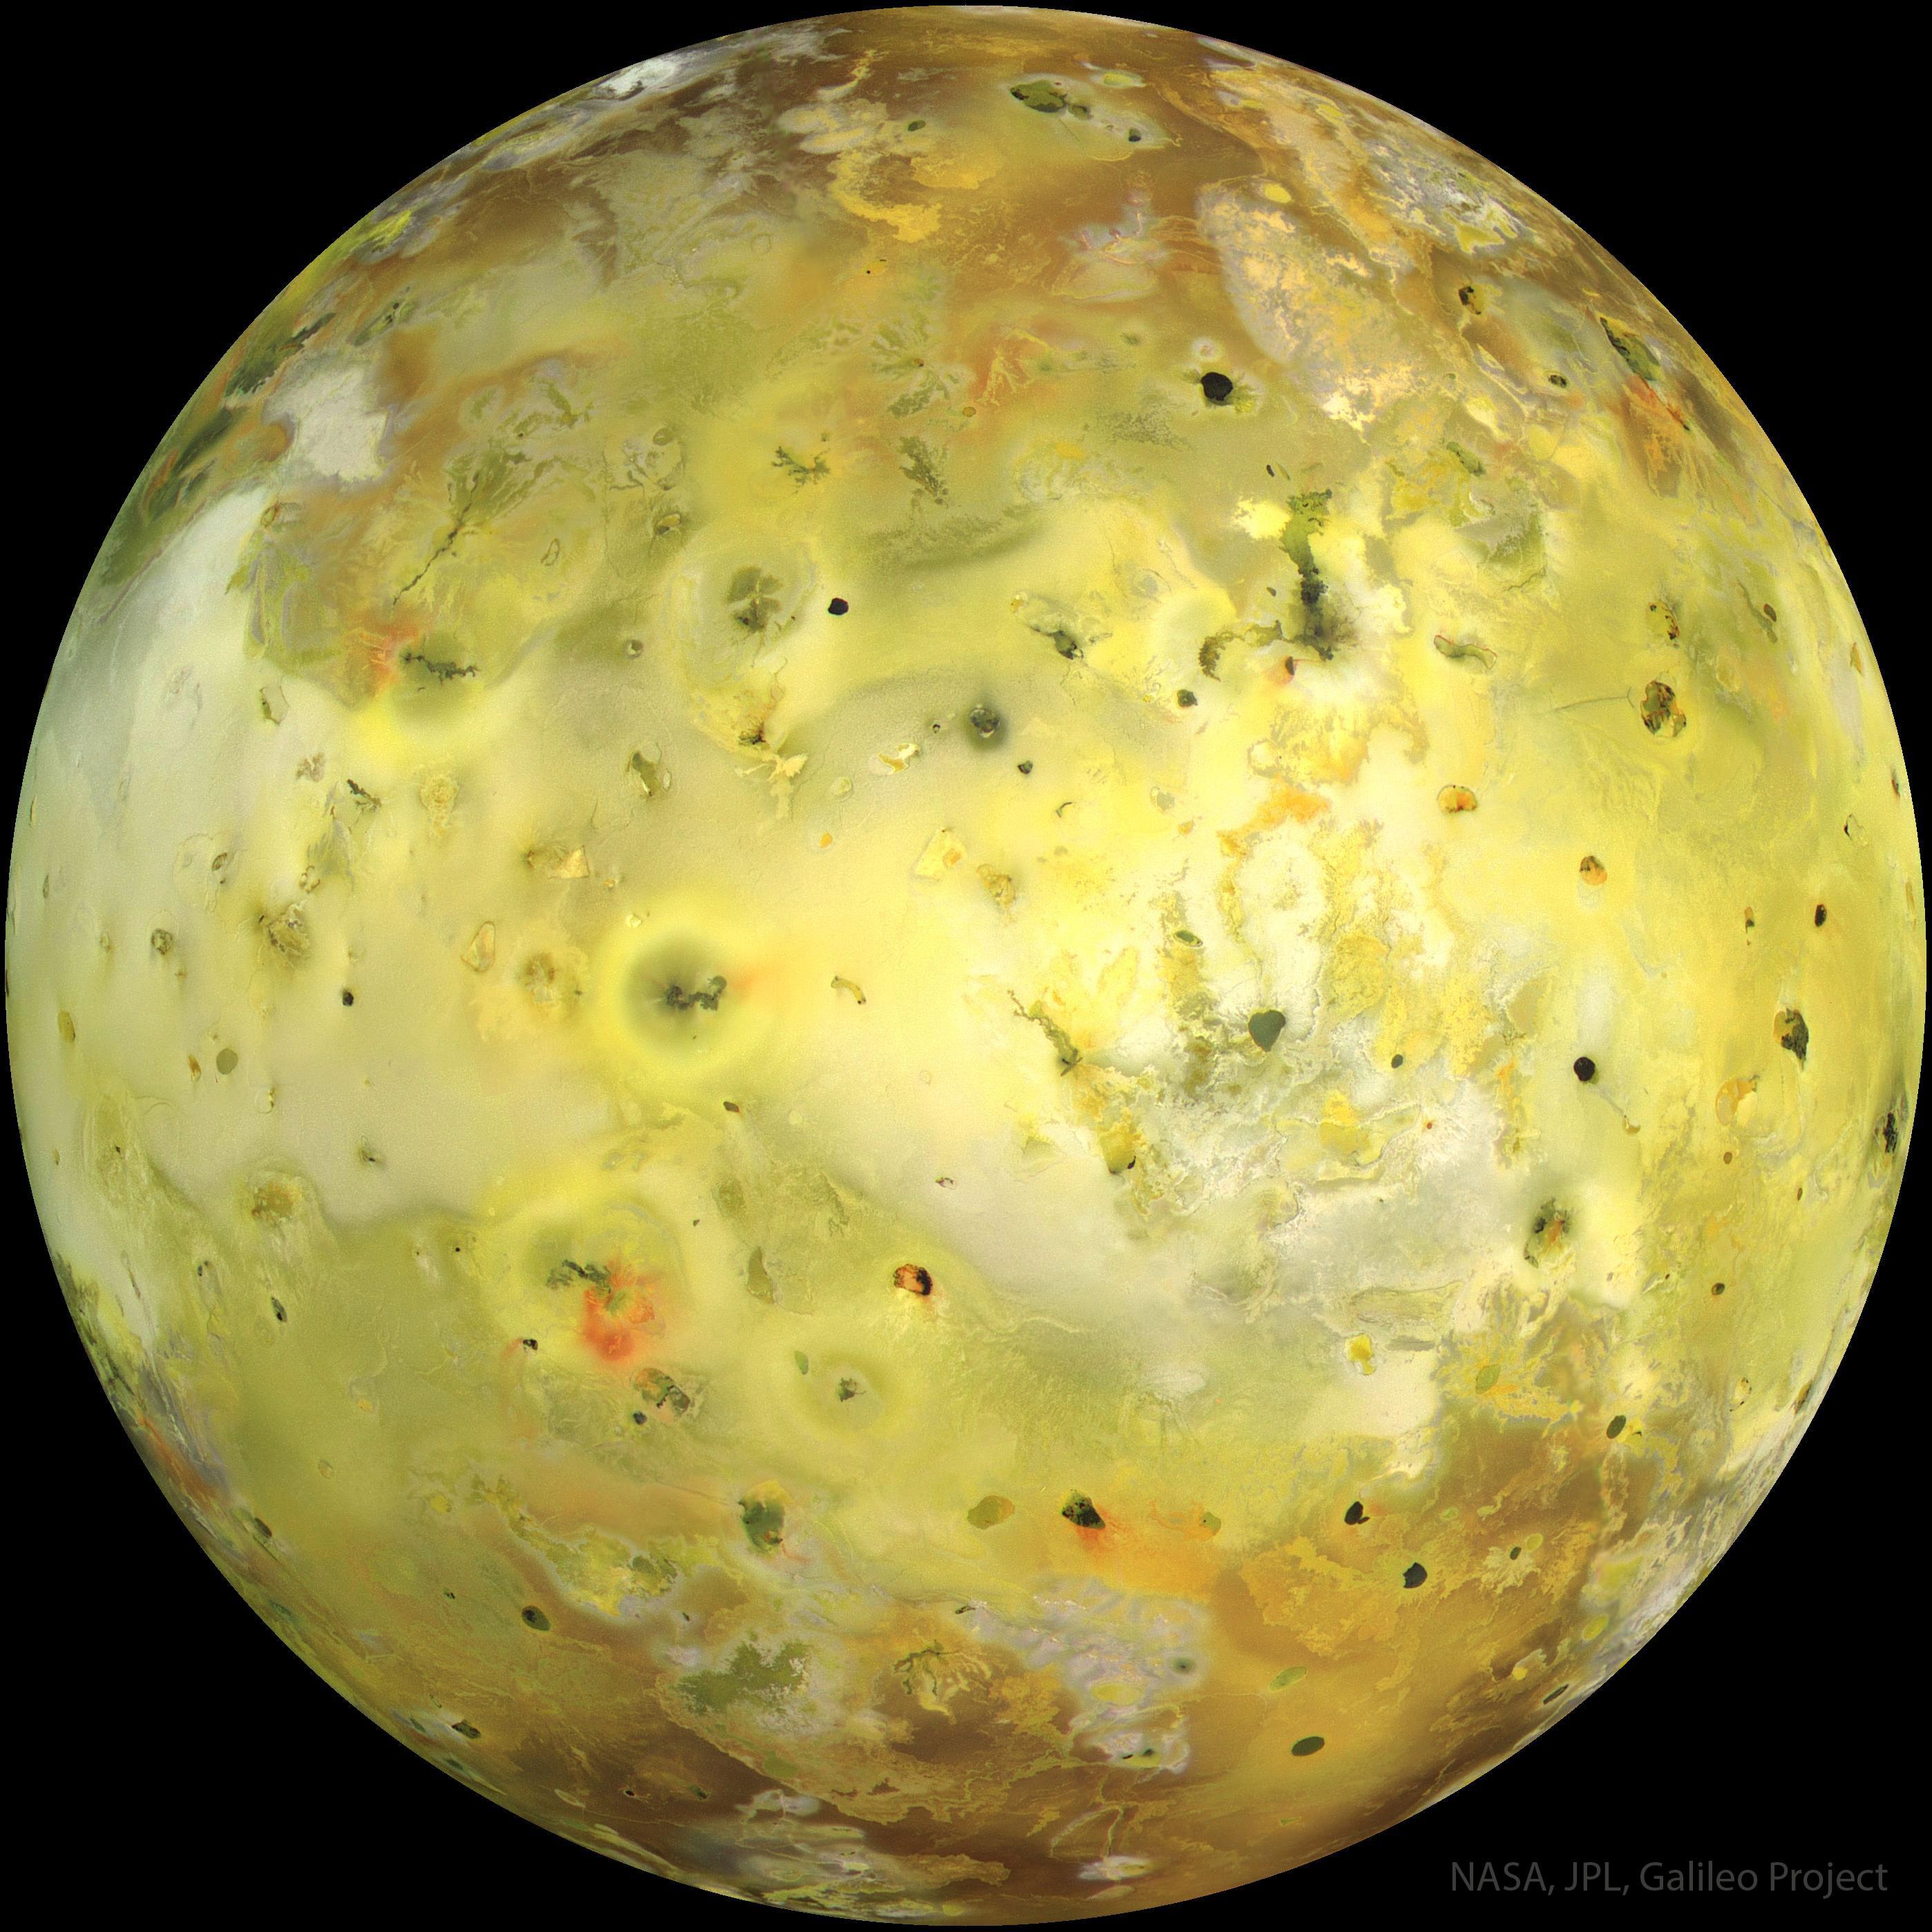 "آيو" قمر المشتري هو أصفرٌ ساطع من الكبريت ومُغطَّى بالبراكين والتدفقات البركانيّة